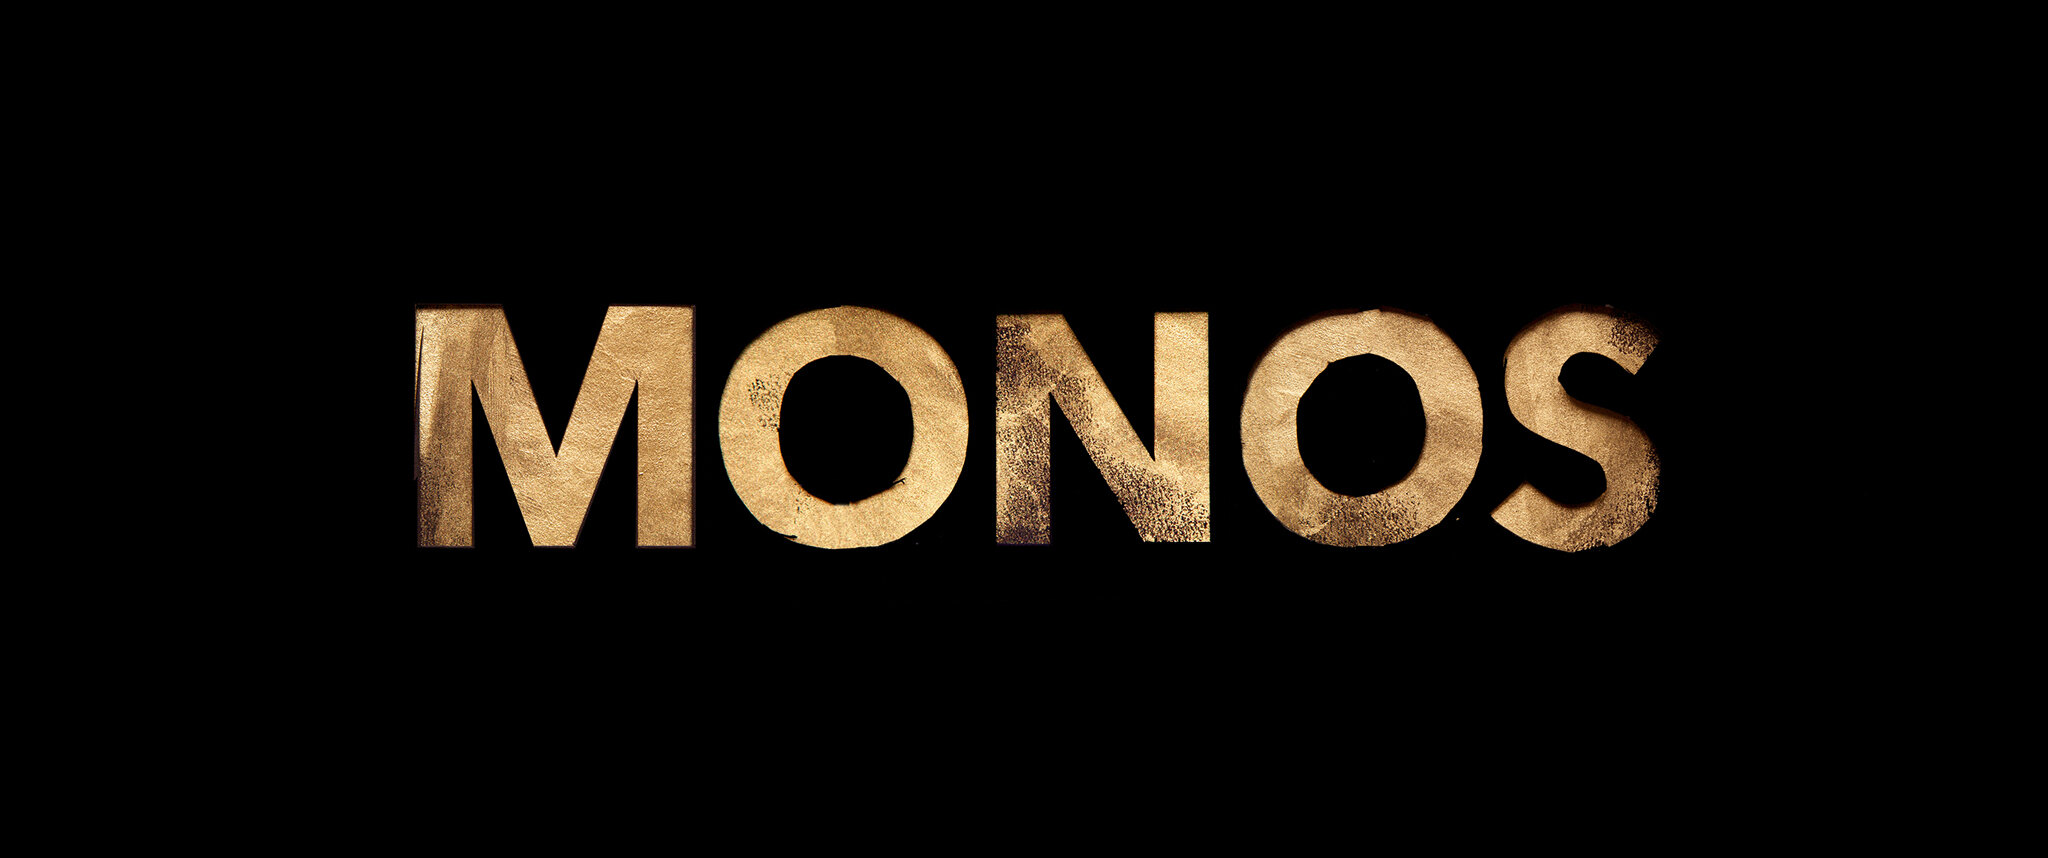 Monos1.jpg